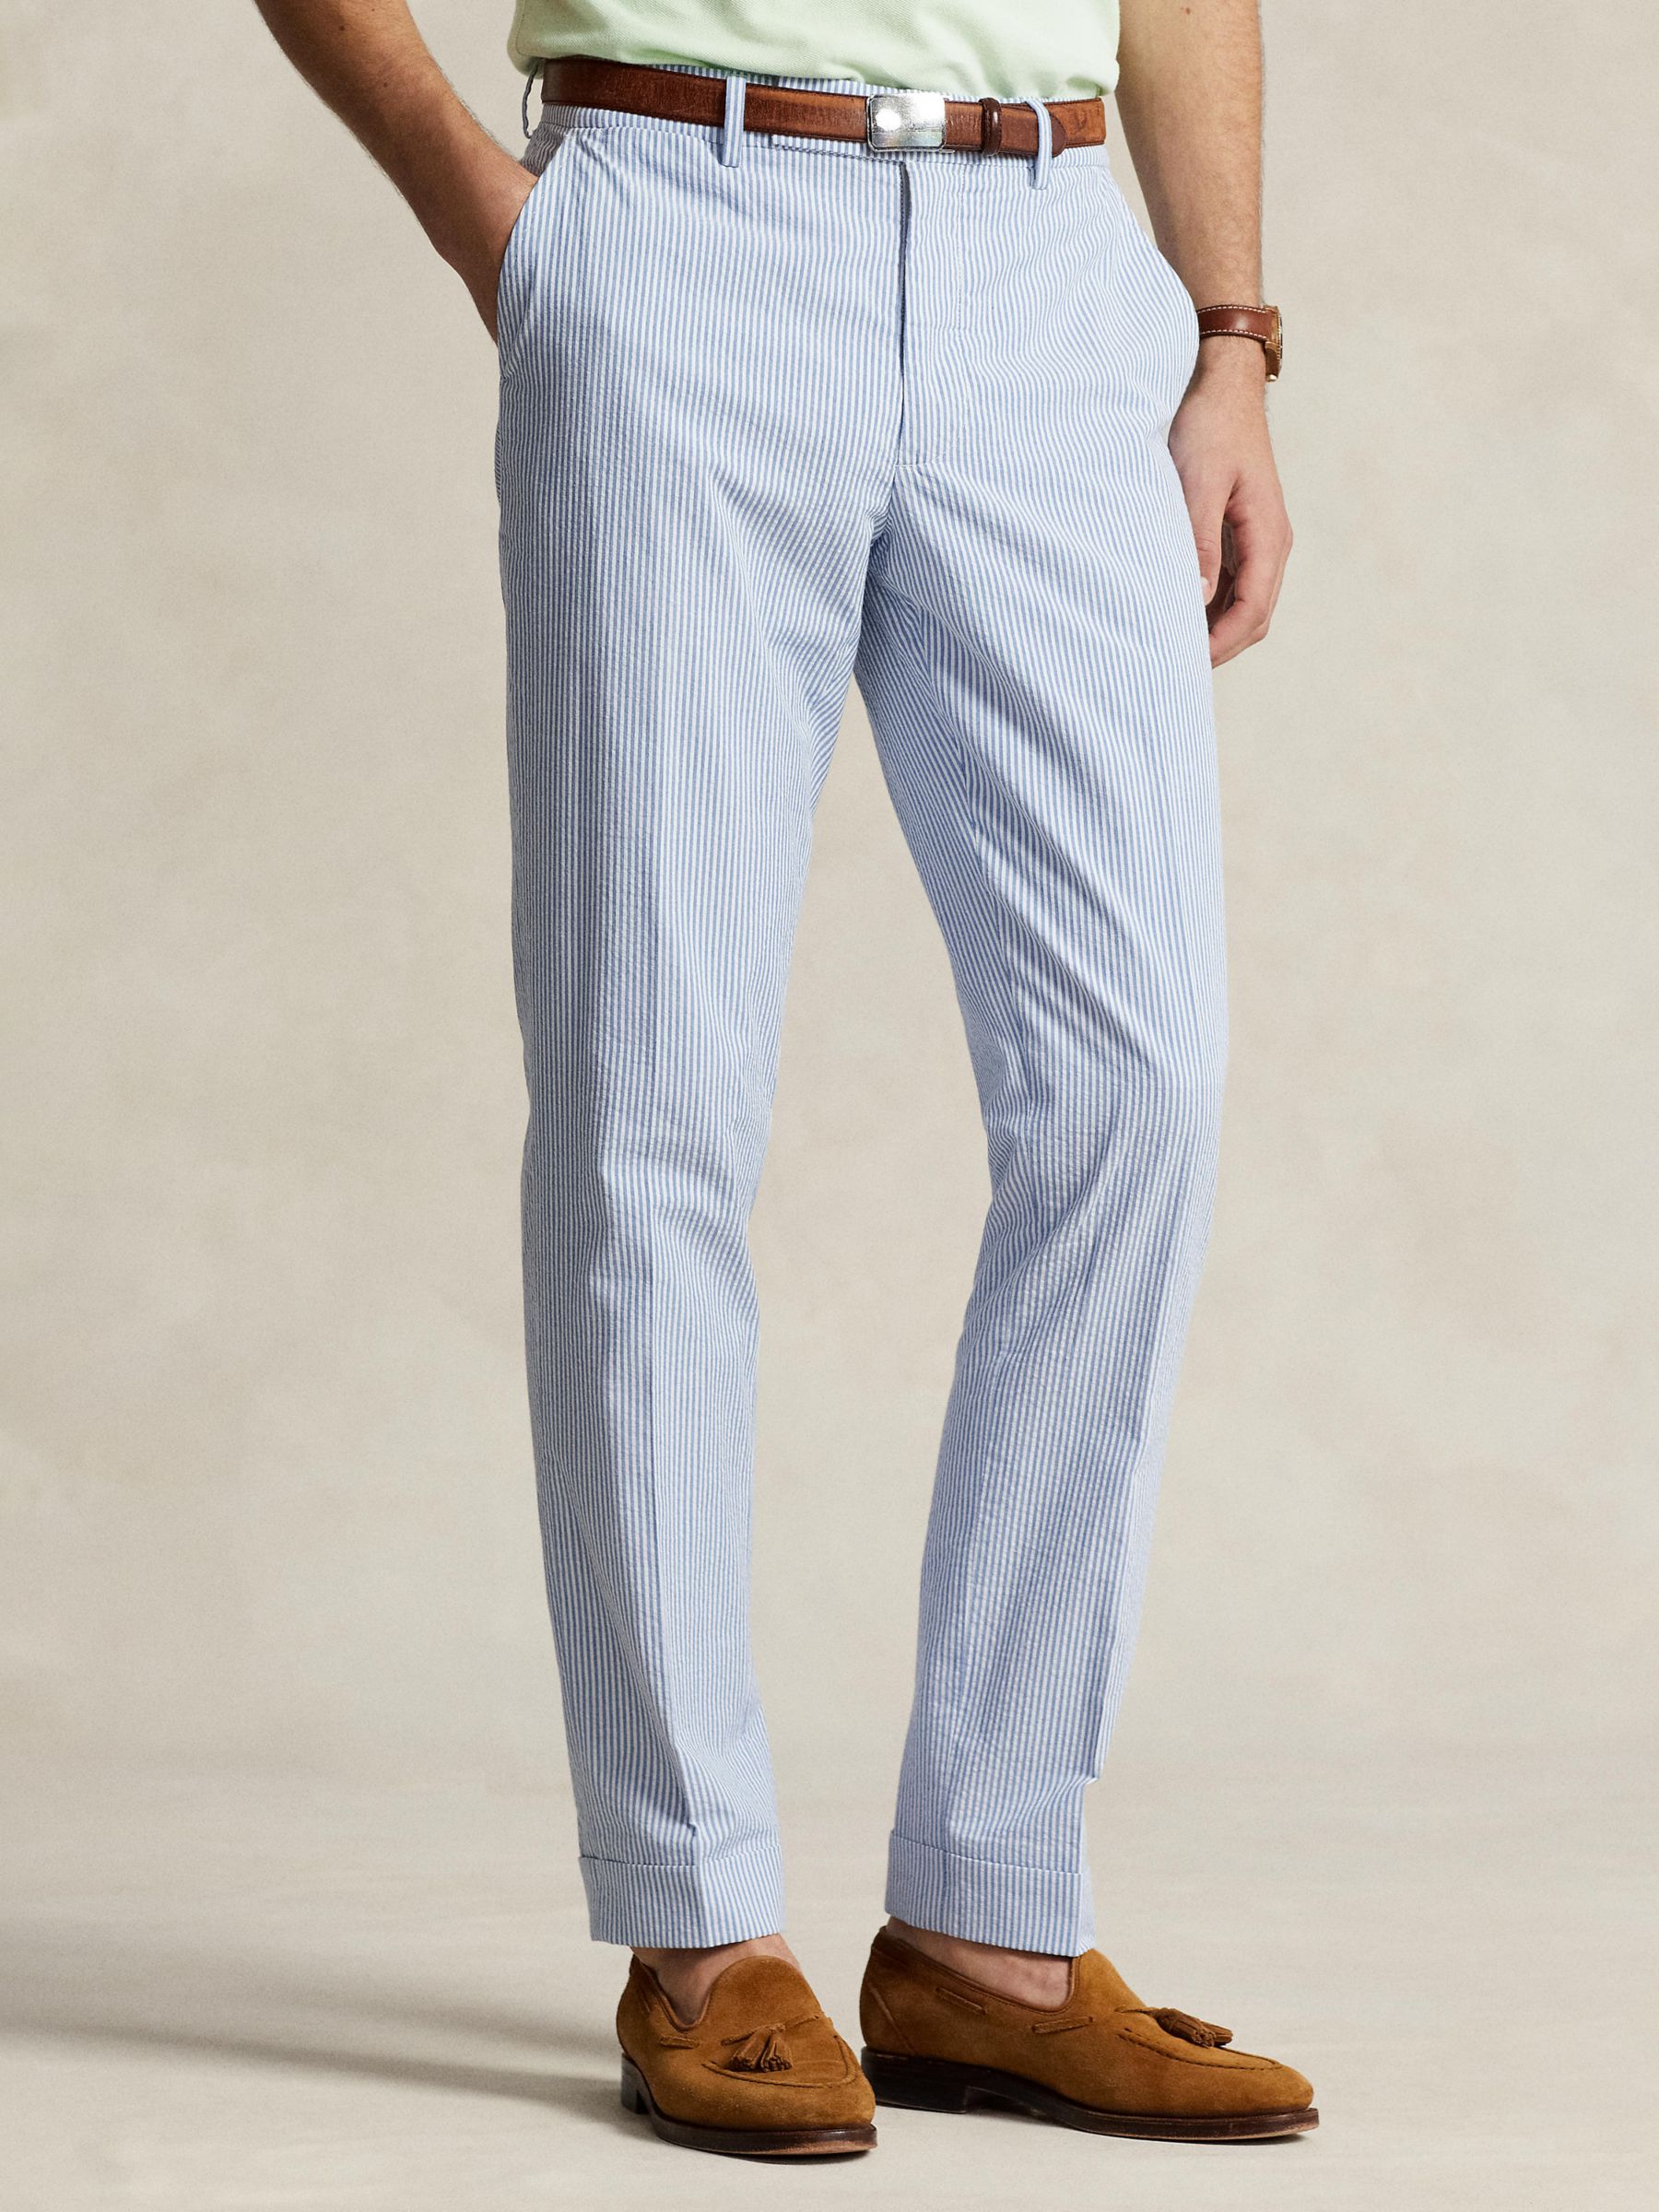 Buy Ralph Lauren Seersucker Suit Trousers, Blue/White Online at johnlewis.com